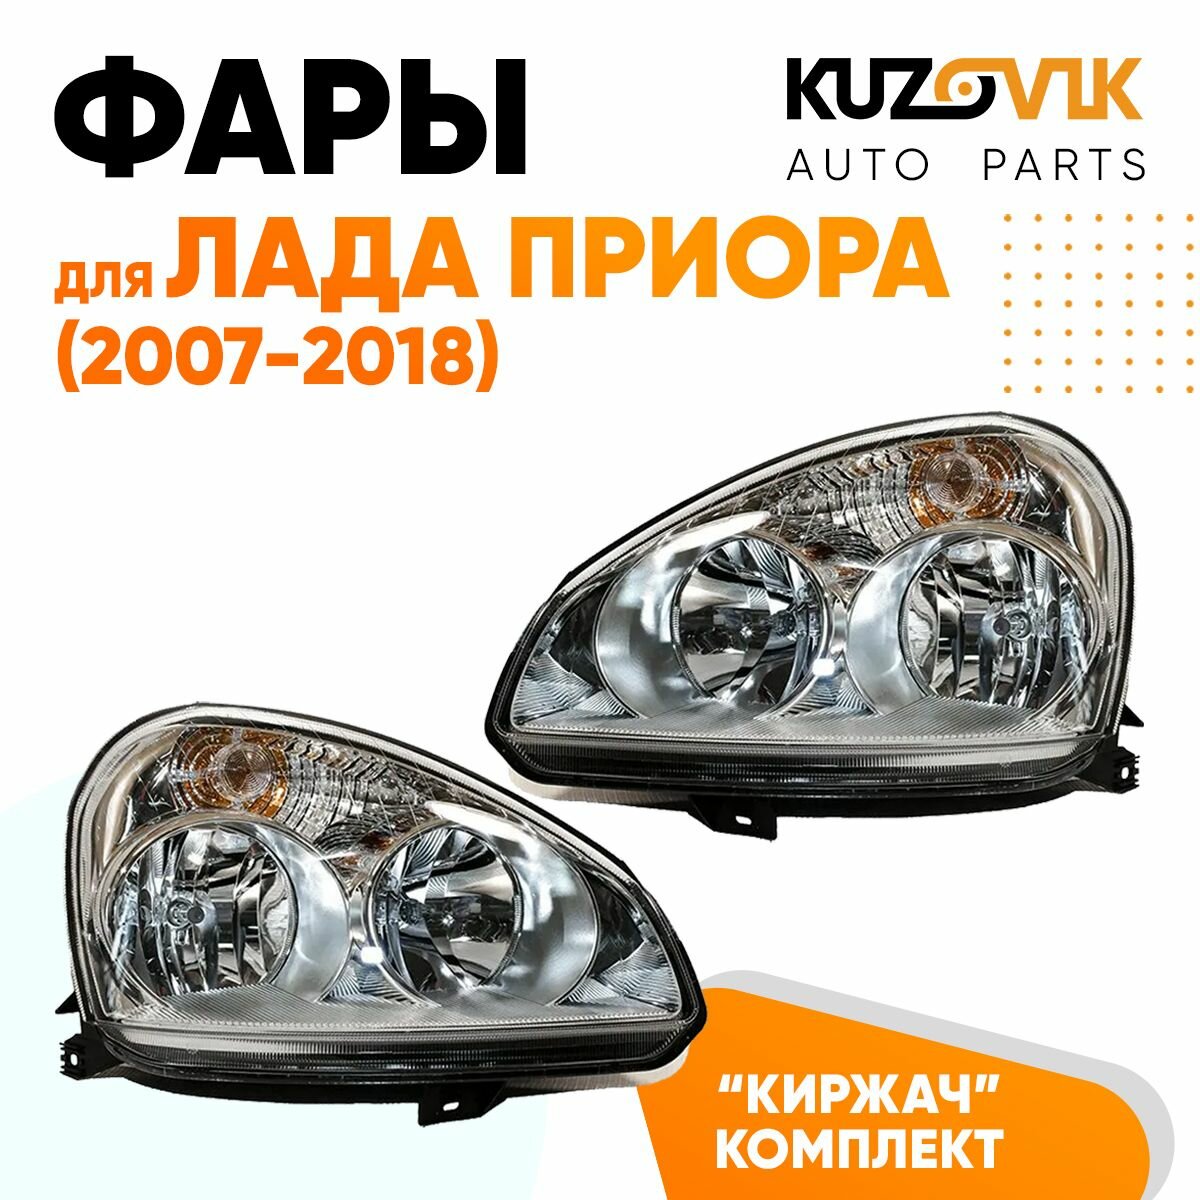 Фары комплект для Лада Приора (2007-2018) тип Киржач 2 штуки левая + правая